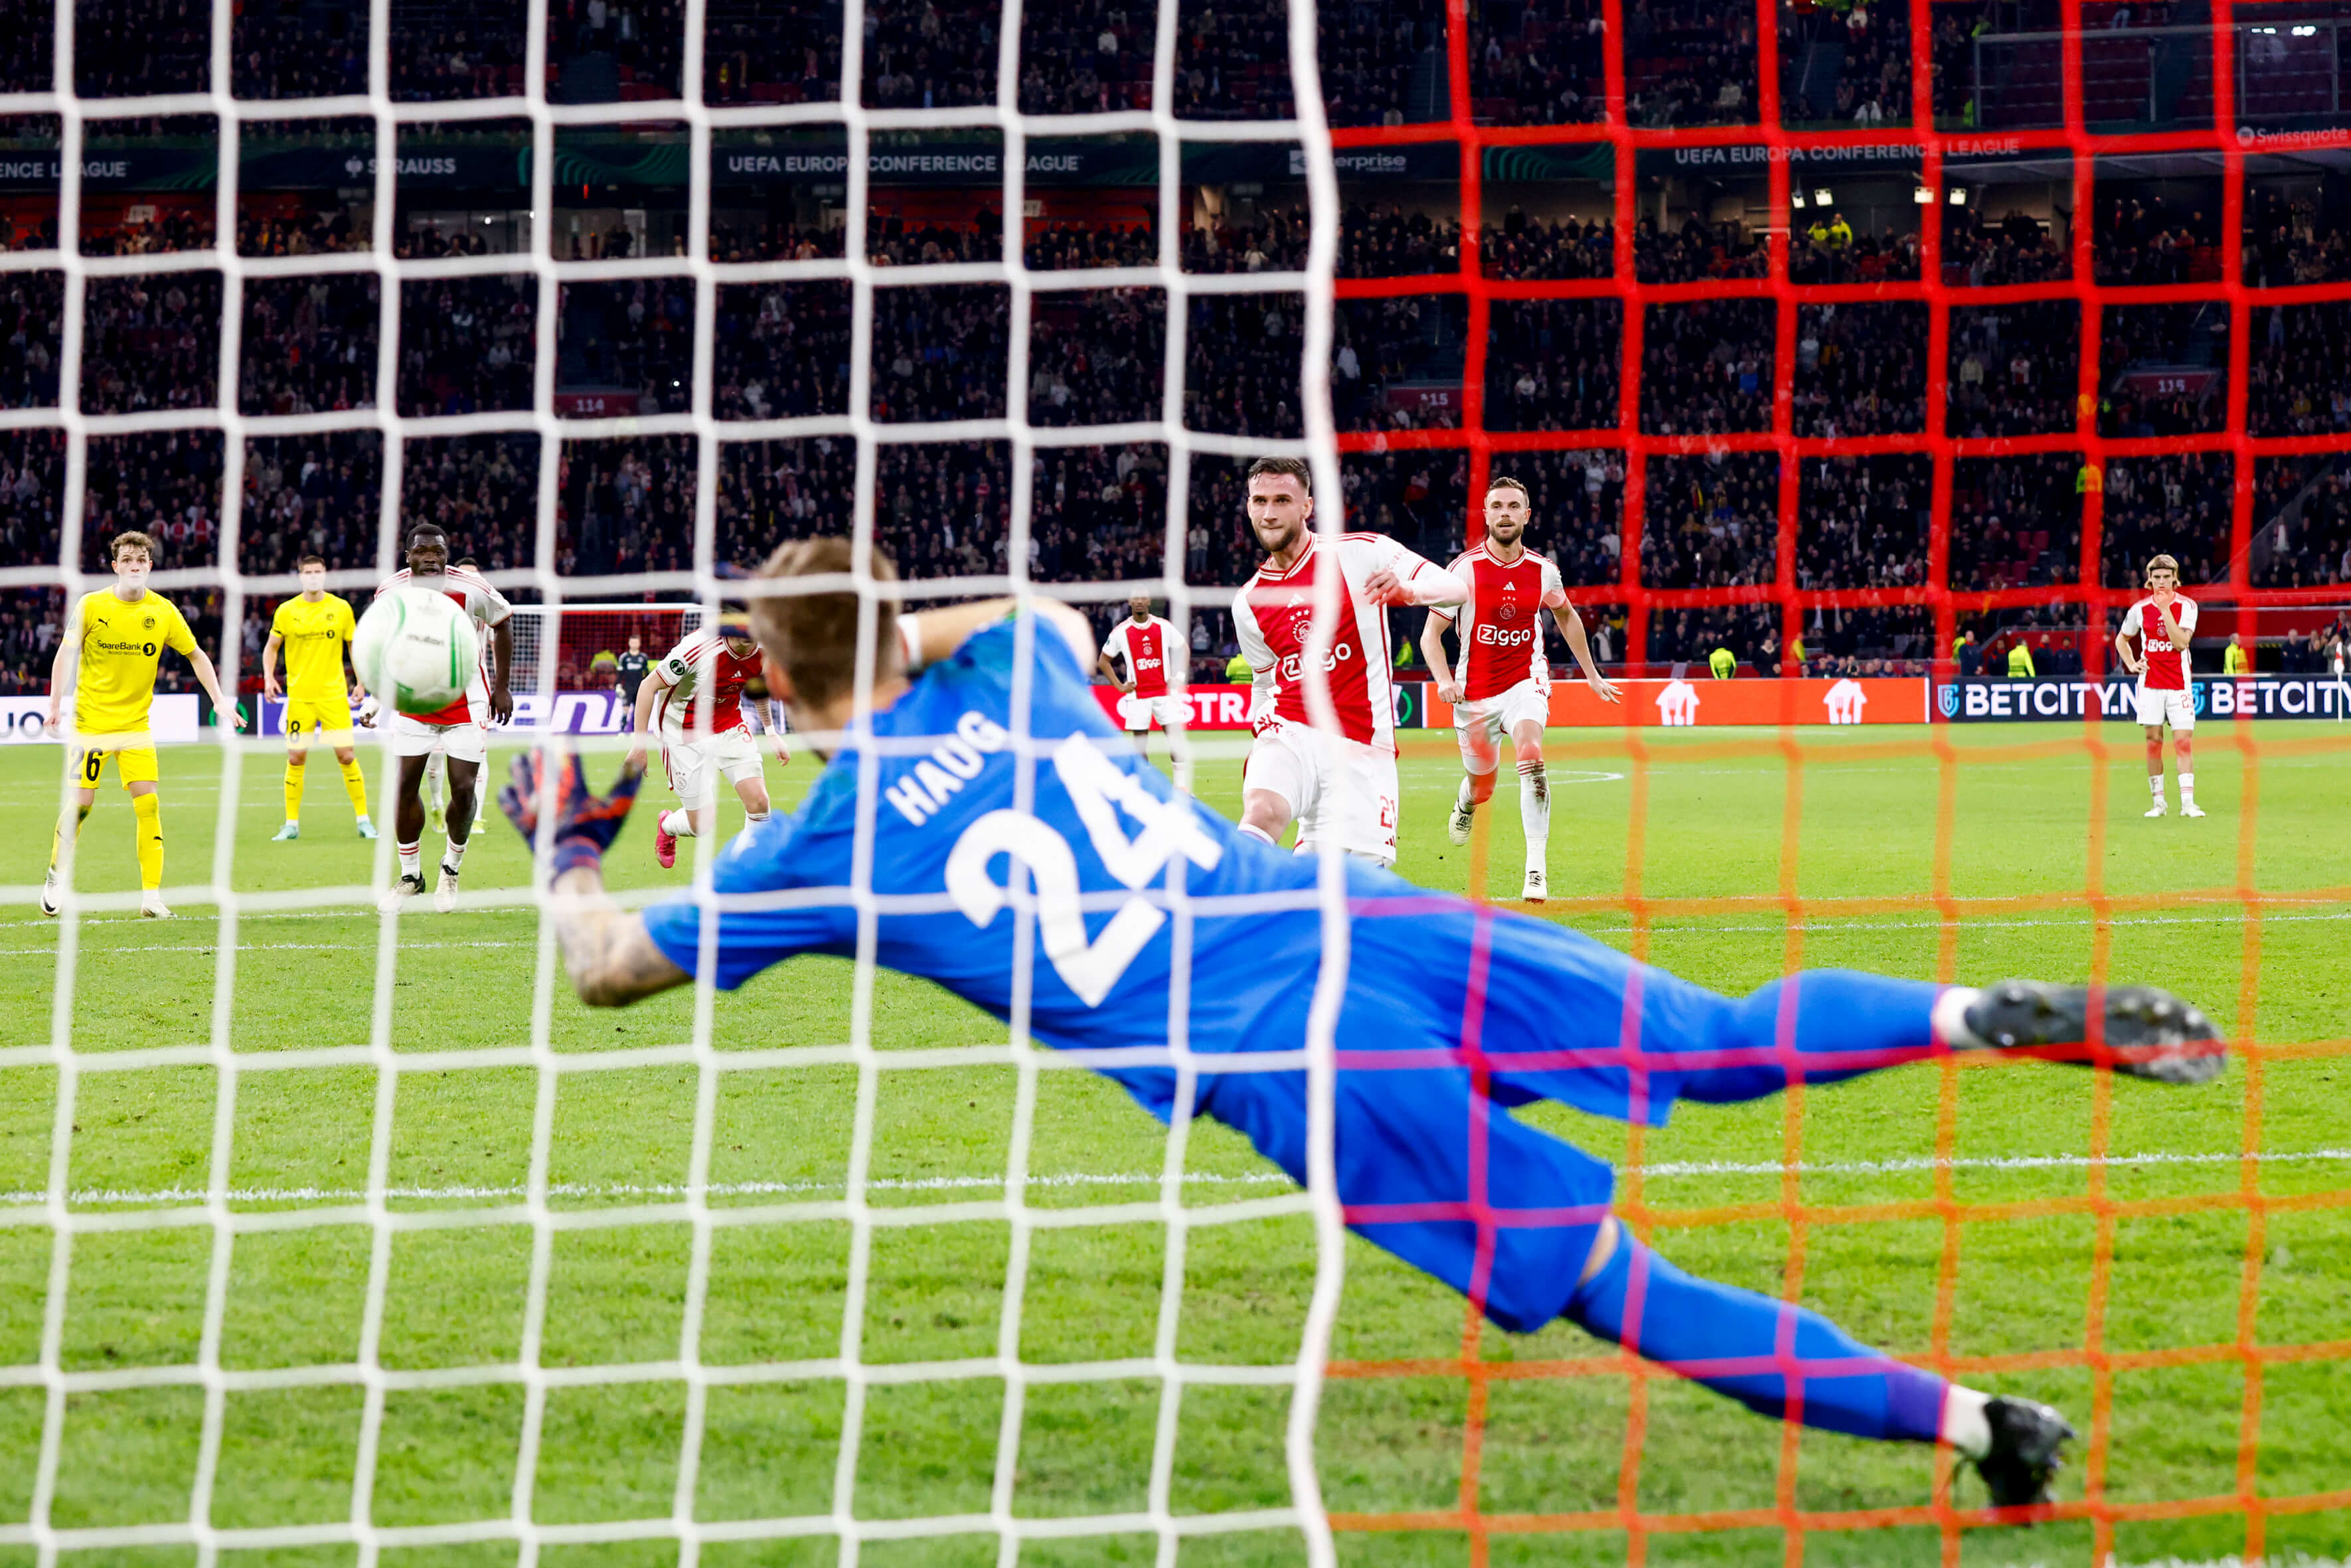 Ajax knokt zich in blessuretijd naast Bodø/Glimt; image source: Pro Shots